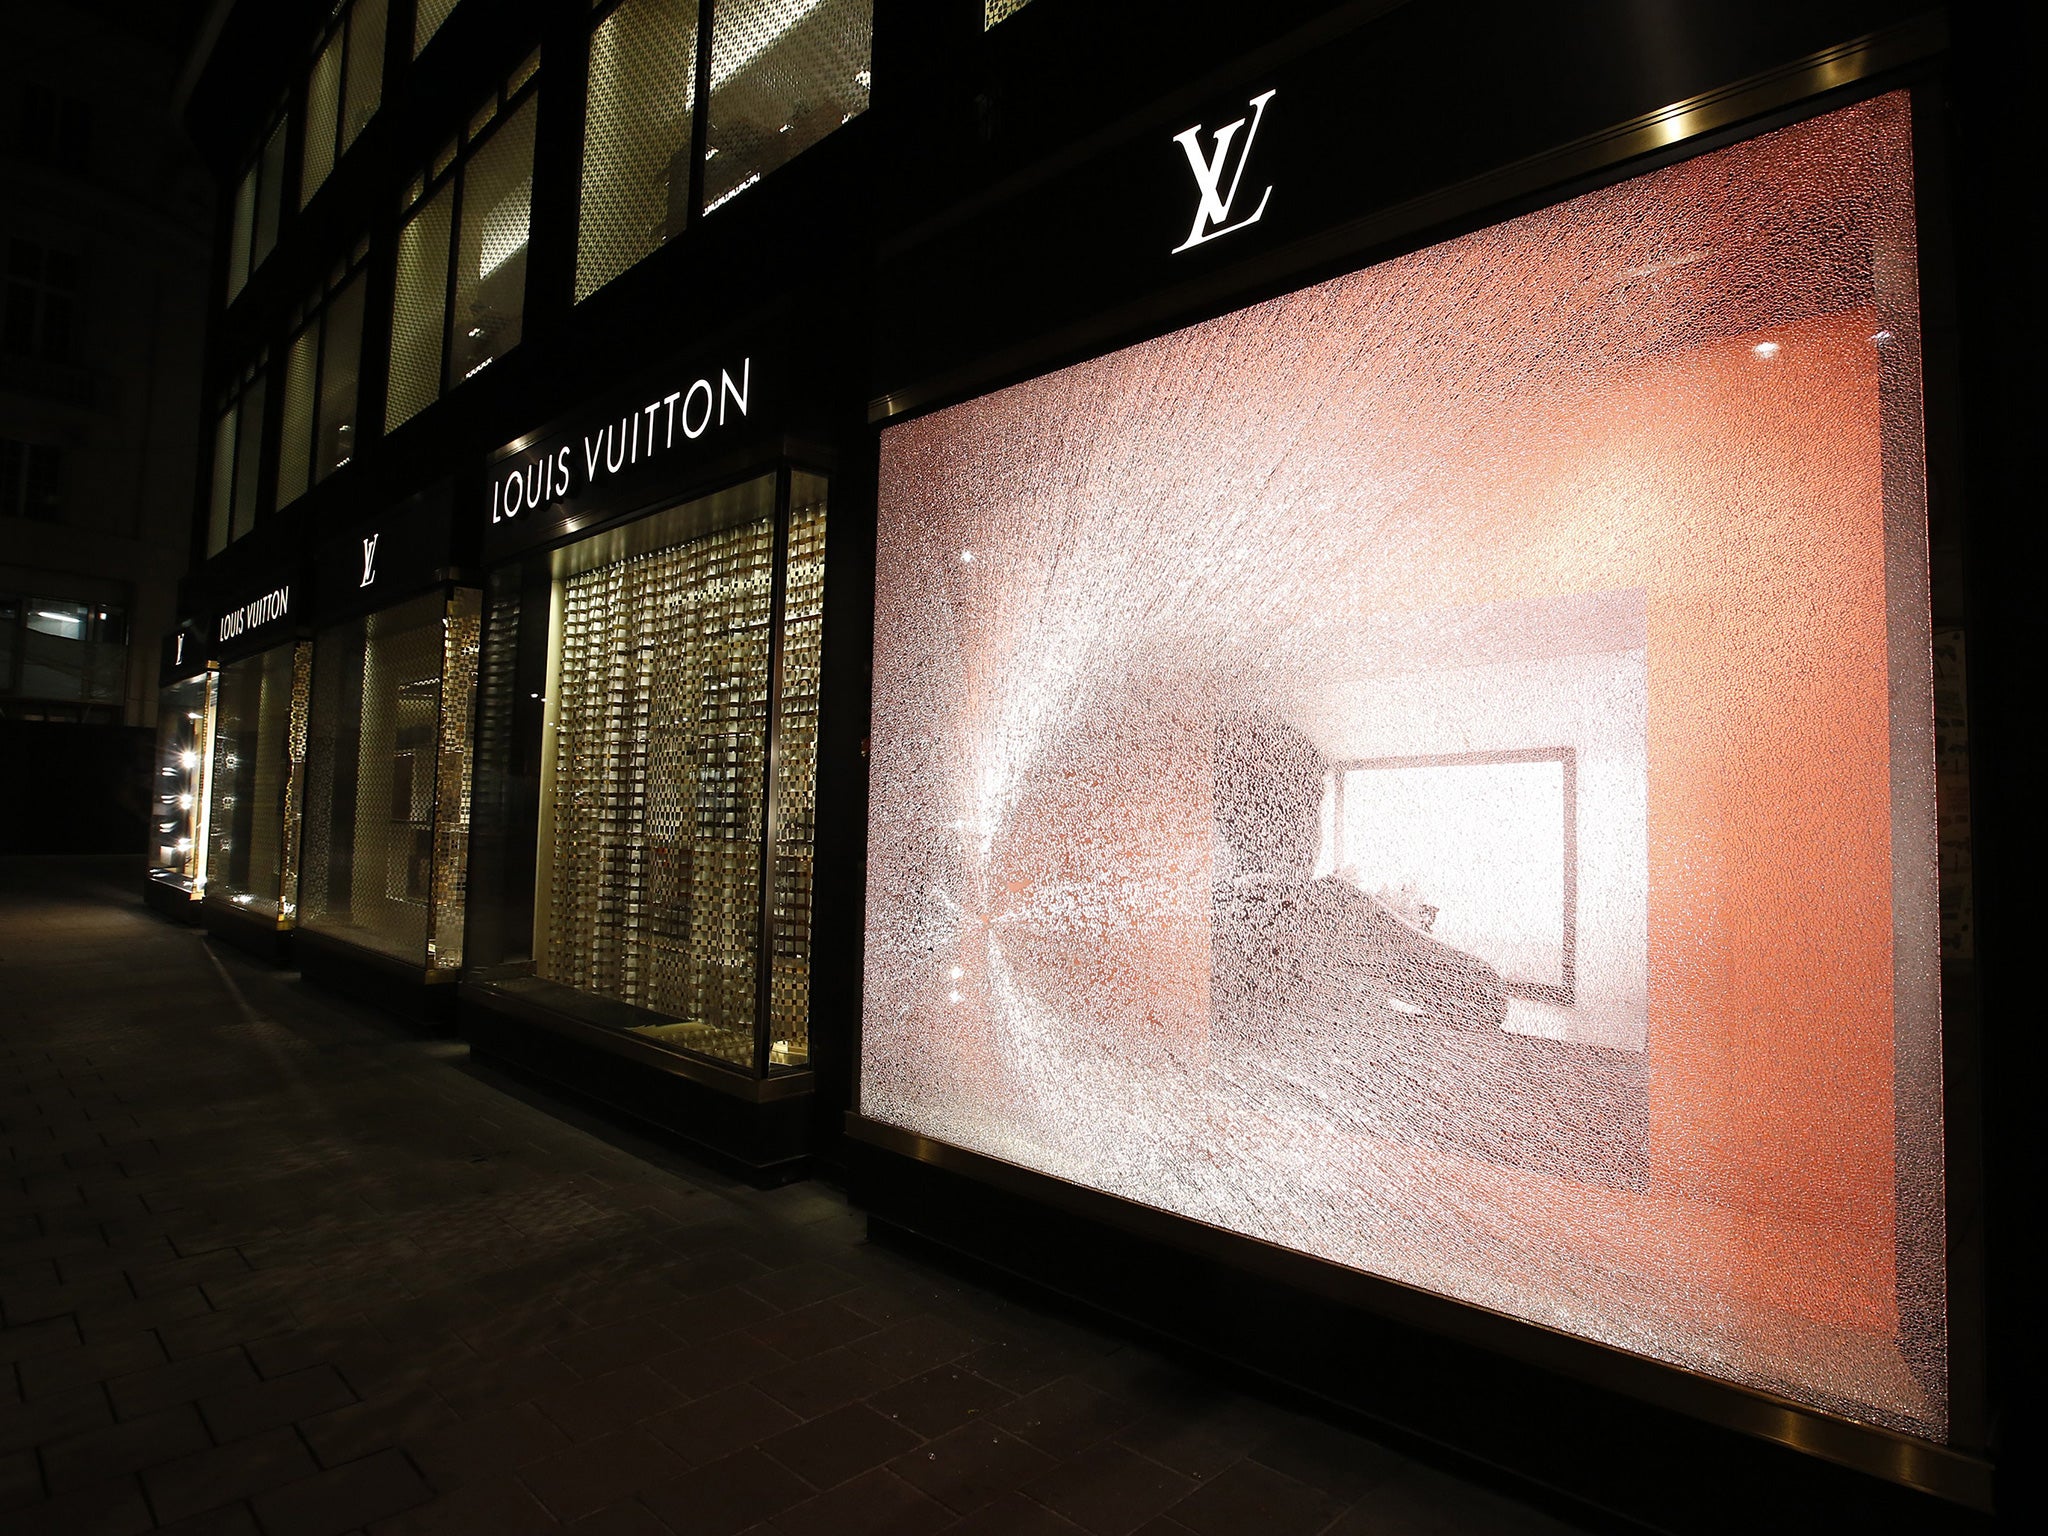 Exclusive Louis Vuitton store in Vienna - VIENNA, AUSTRIA, EUROPE